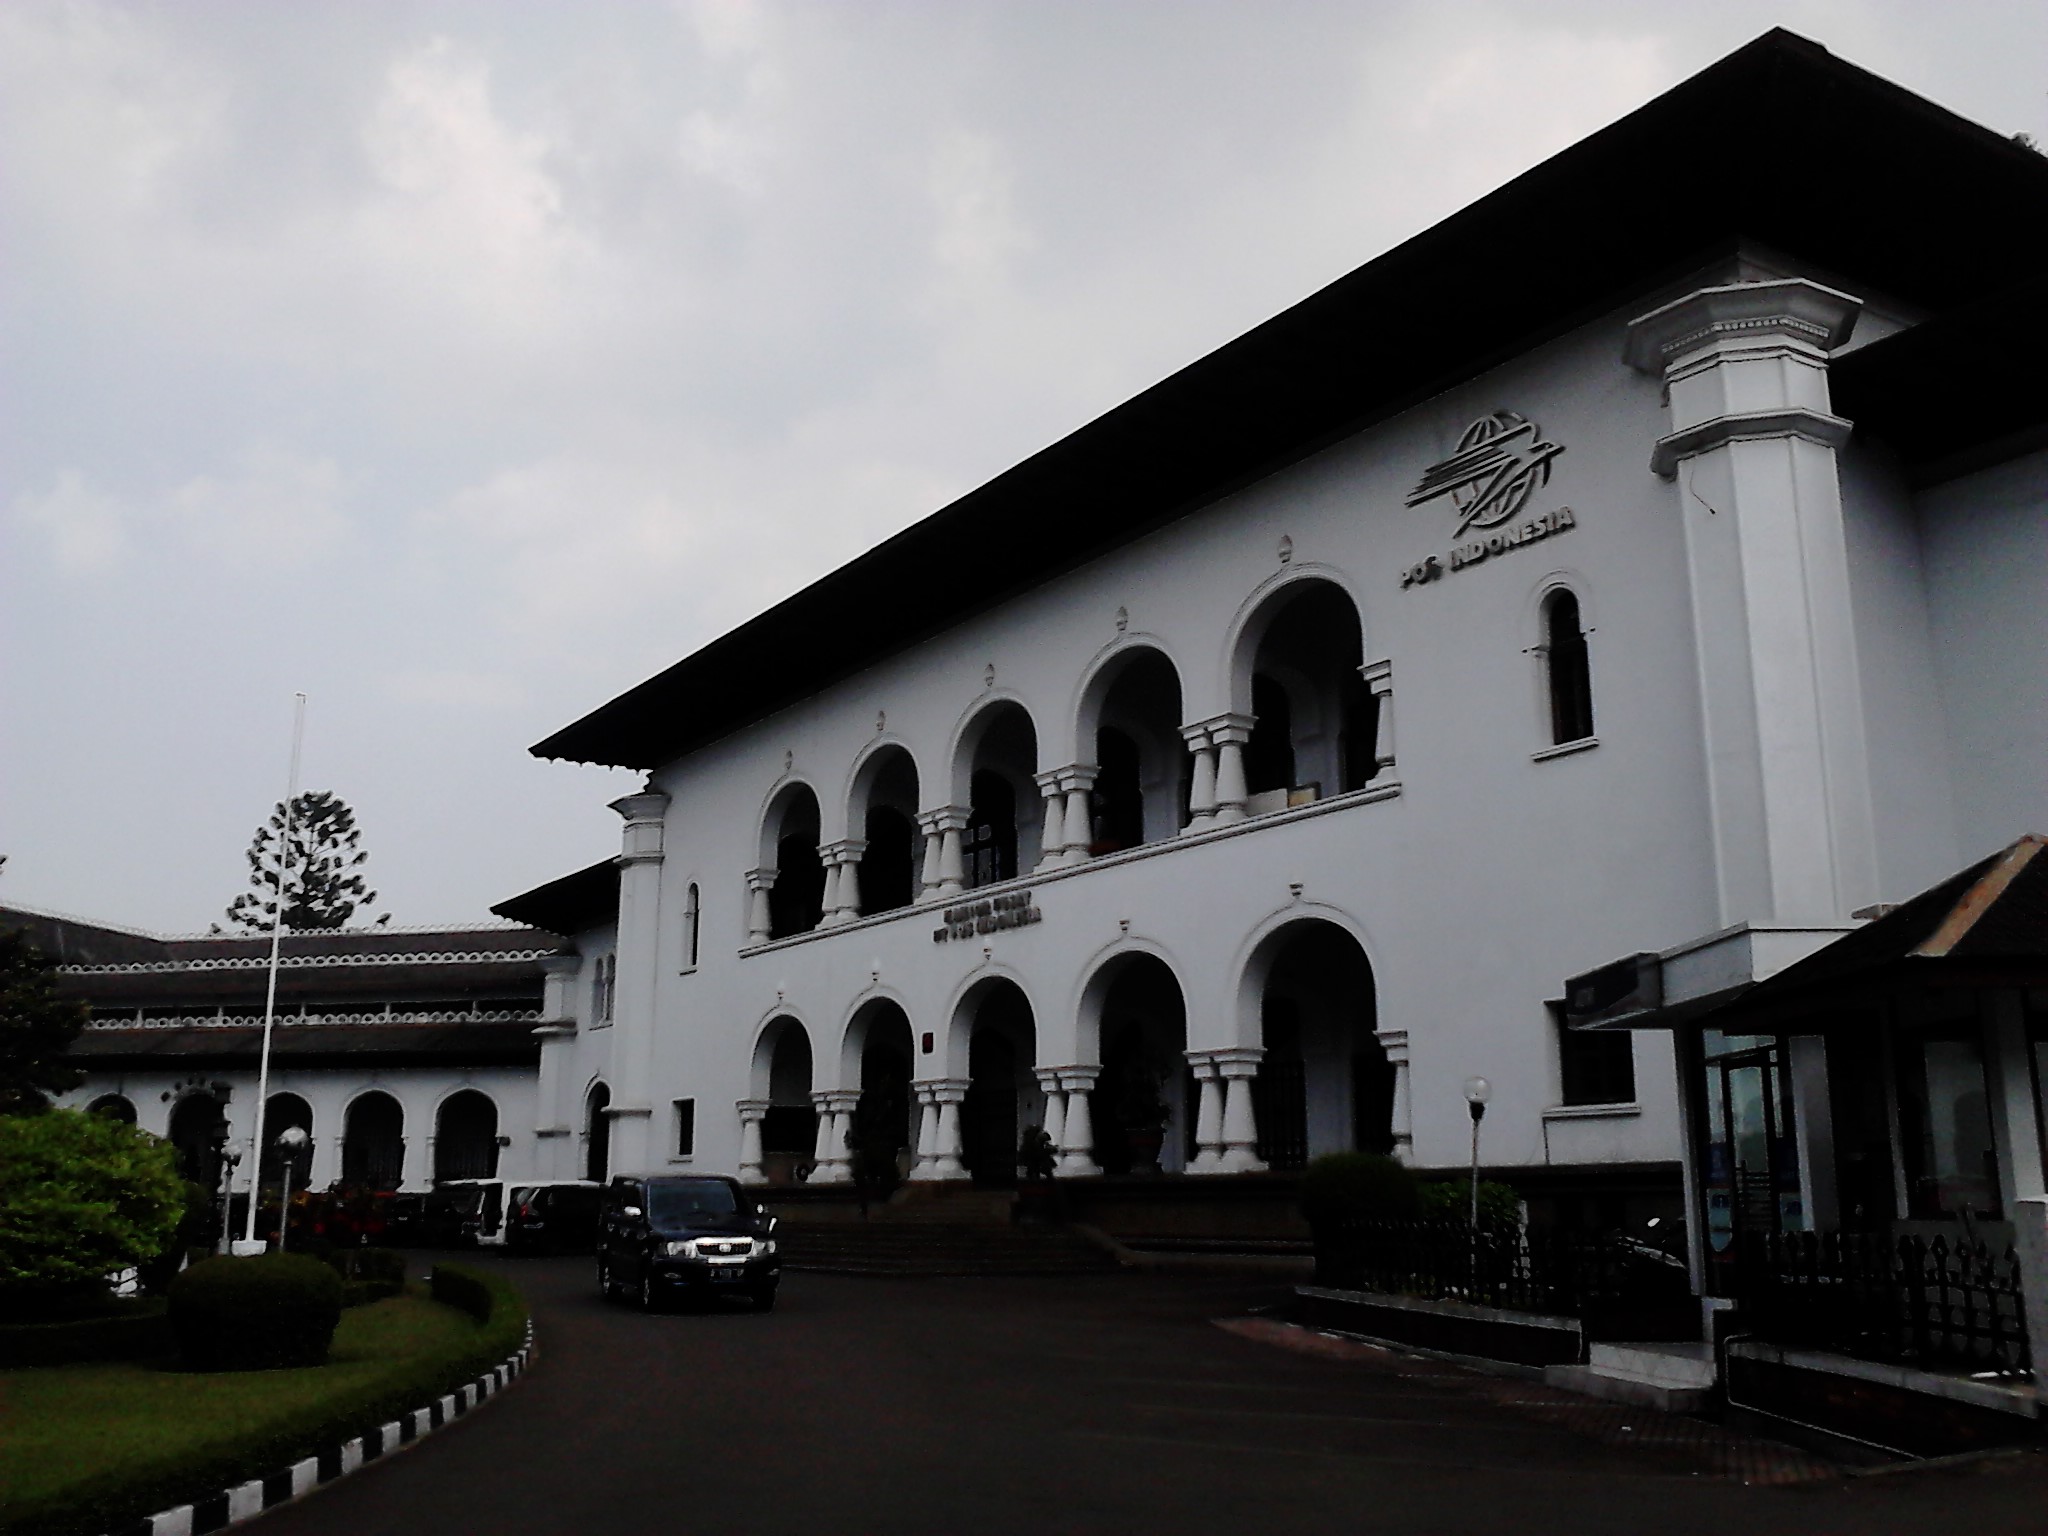 Tempat Wisata di Bandung - Museum Pos